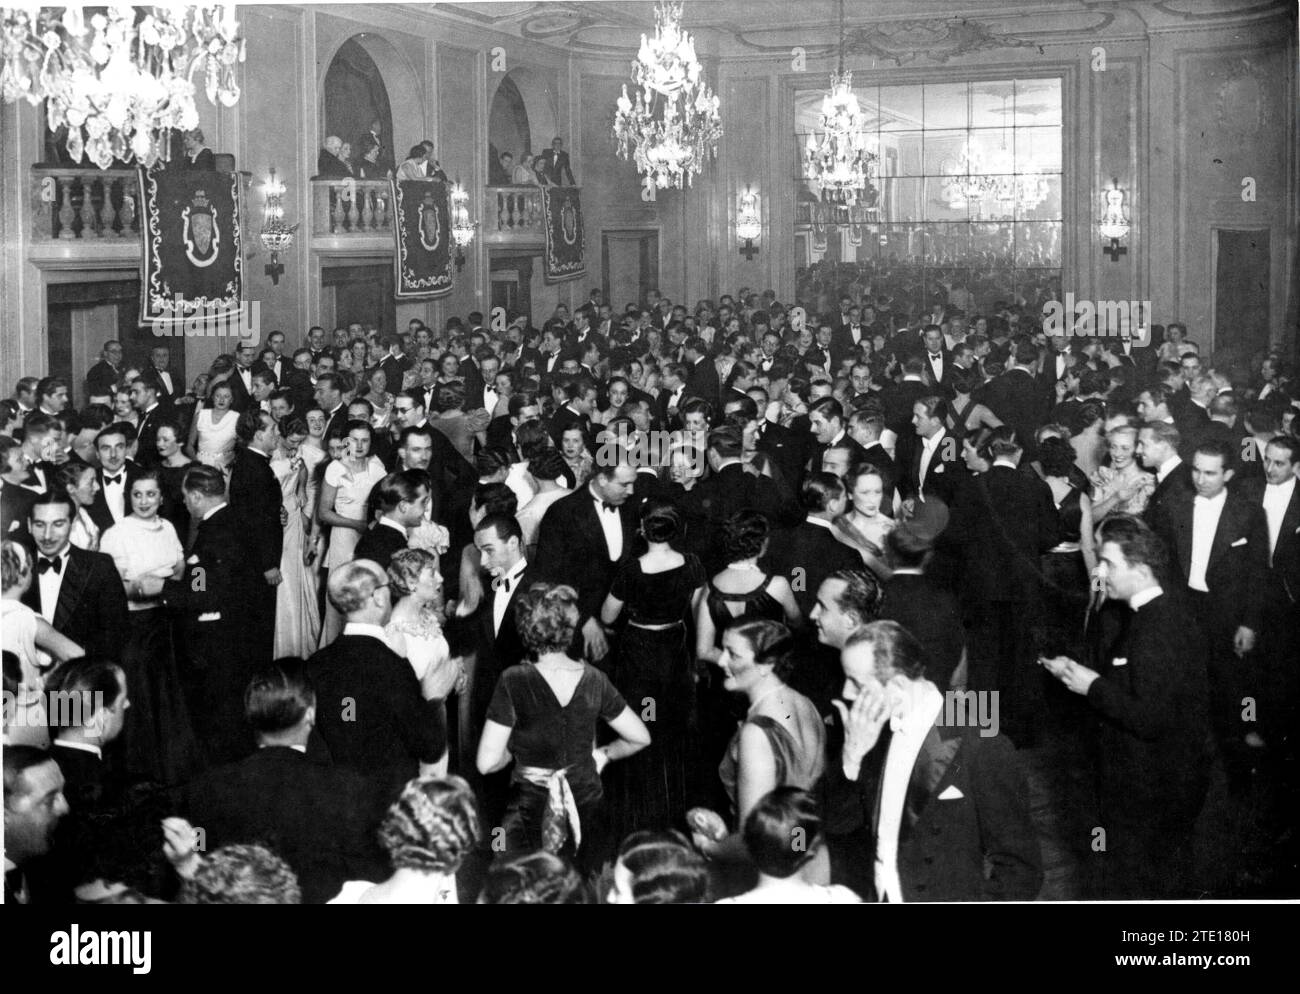 Barcelone, 01/07/1936. Apparition de la salle de l'Hôtel Ritz à Barcelone pendant le bal de charité pour soutenir l'hôpital de la Croix-Rouge. Crédit : Album / Archivo ABC / Josep Brangulí Banque D'Images